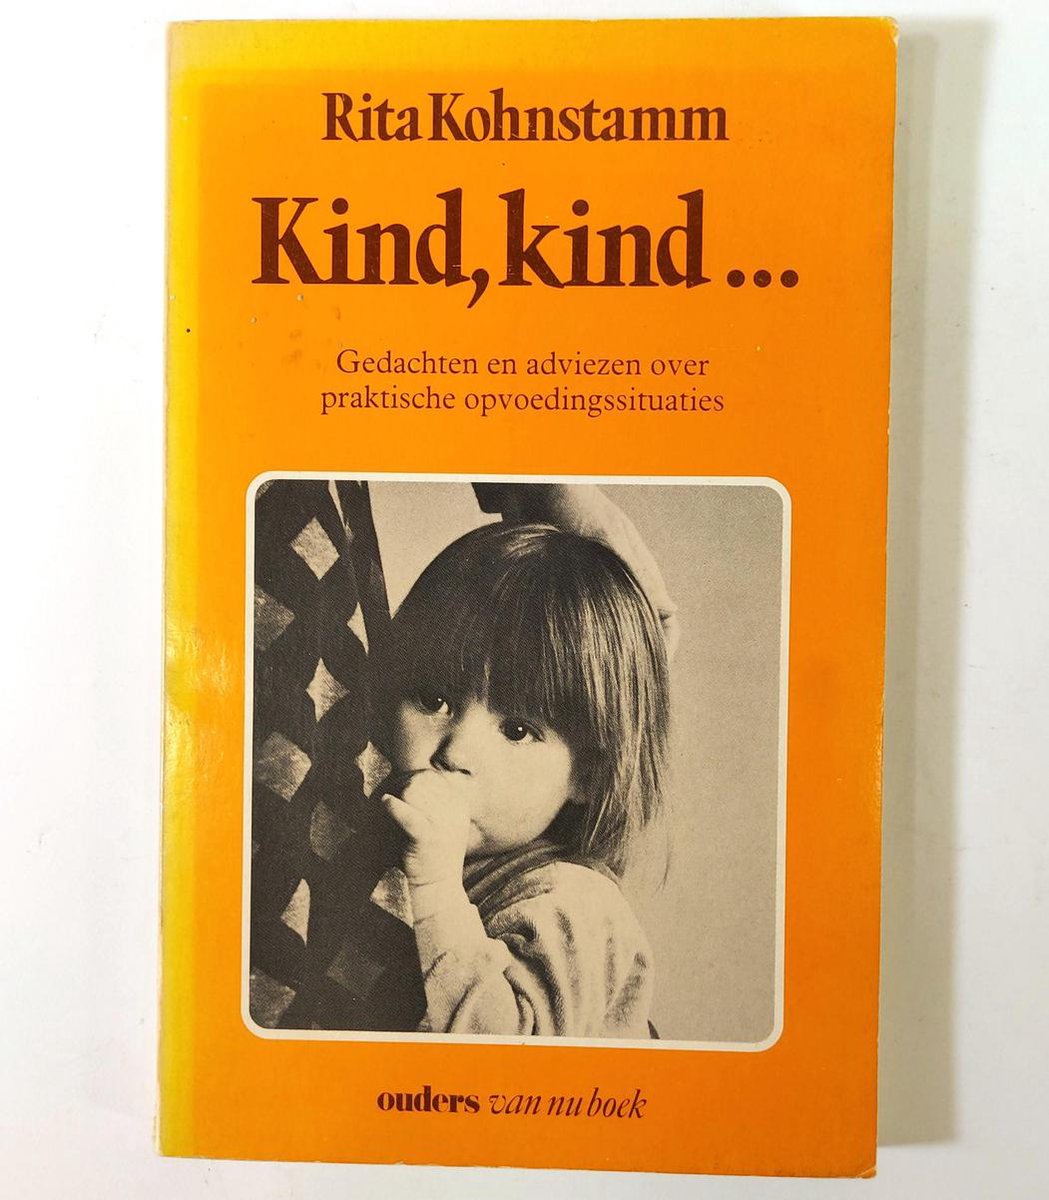 Concessie duidelijk server Kind Kind van Rita Kohnstamm 1 x tweedehands te koop - omero.nl